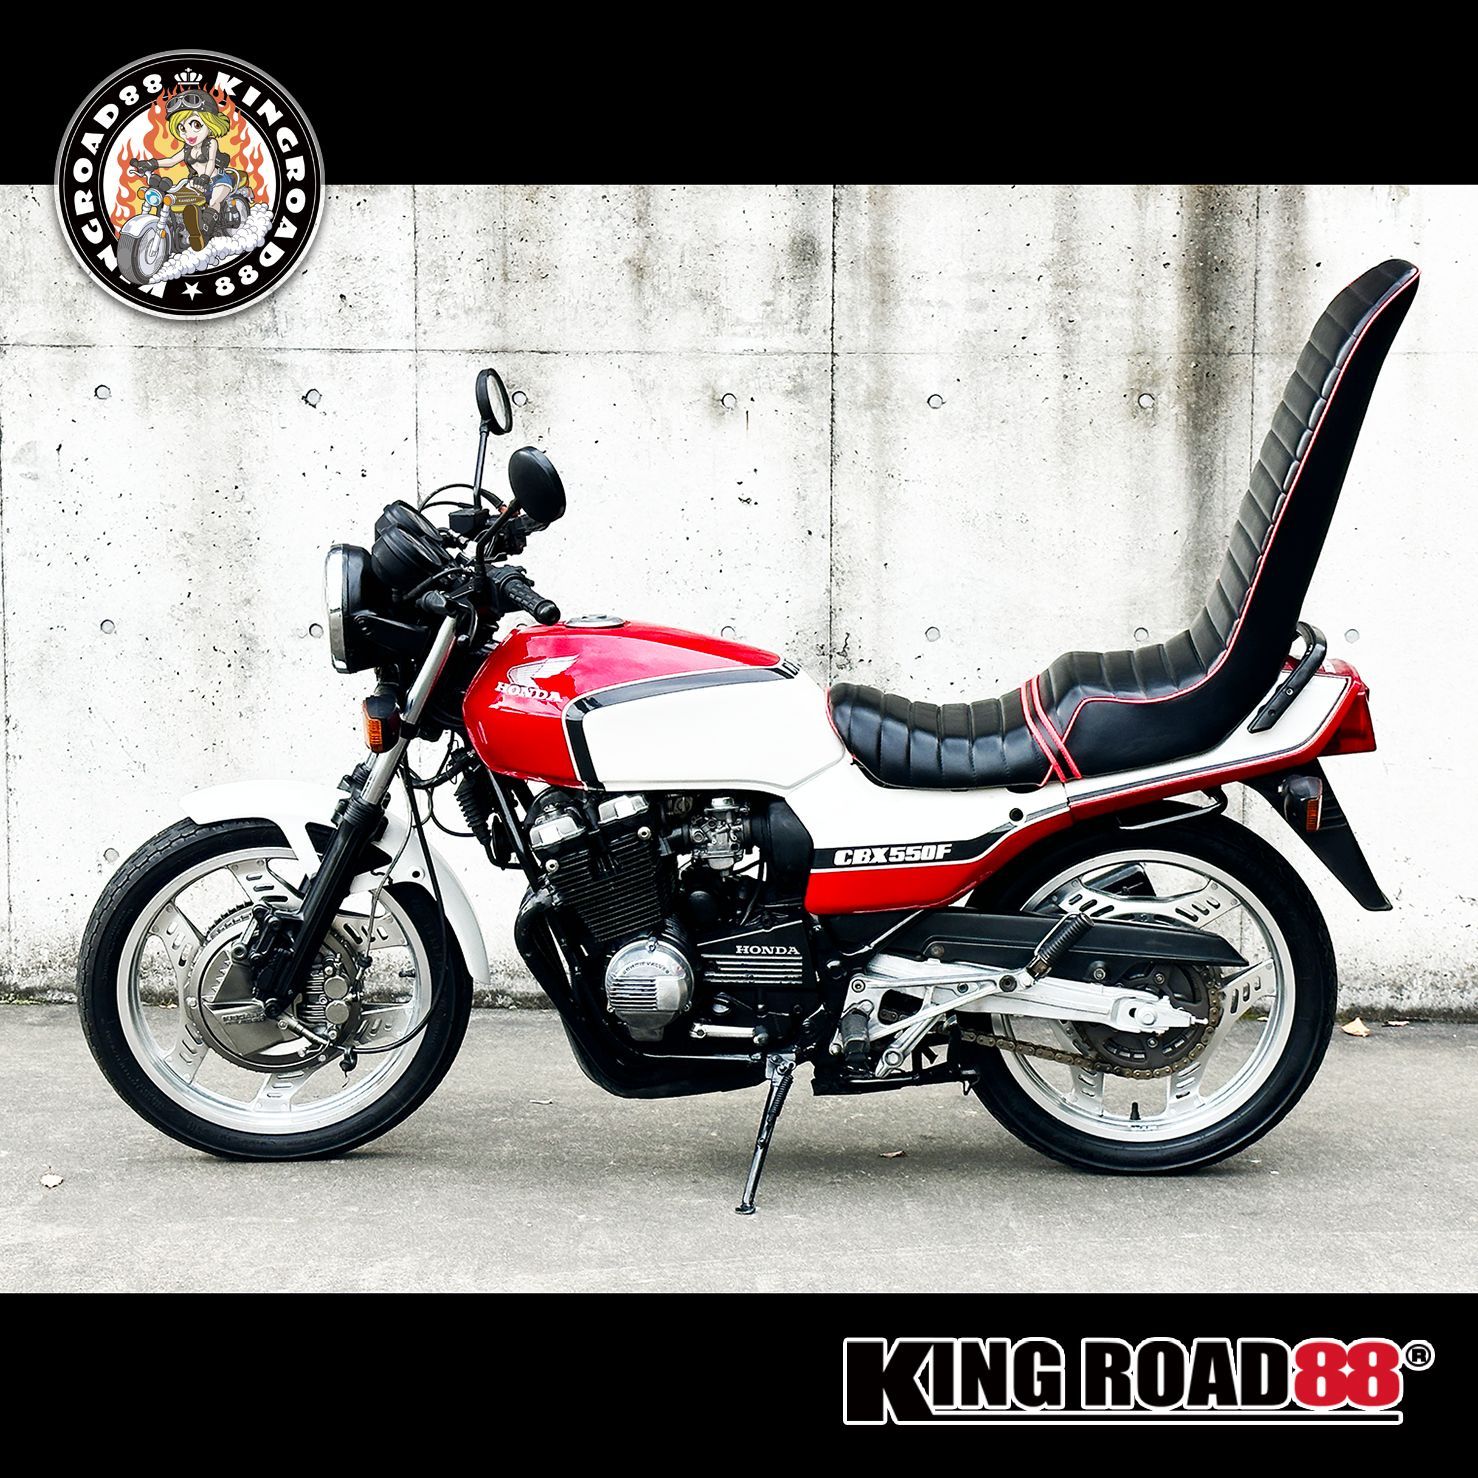 CBX550F 国土交通省認定400登録 - オートバイ車体